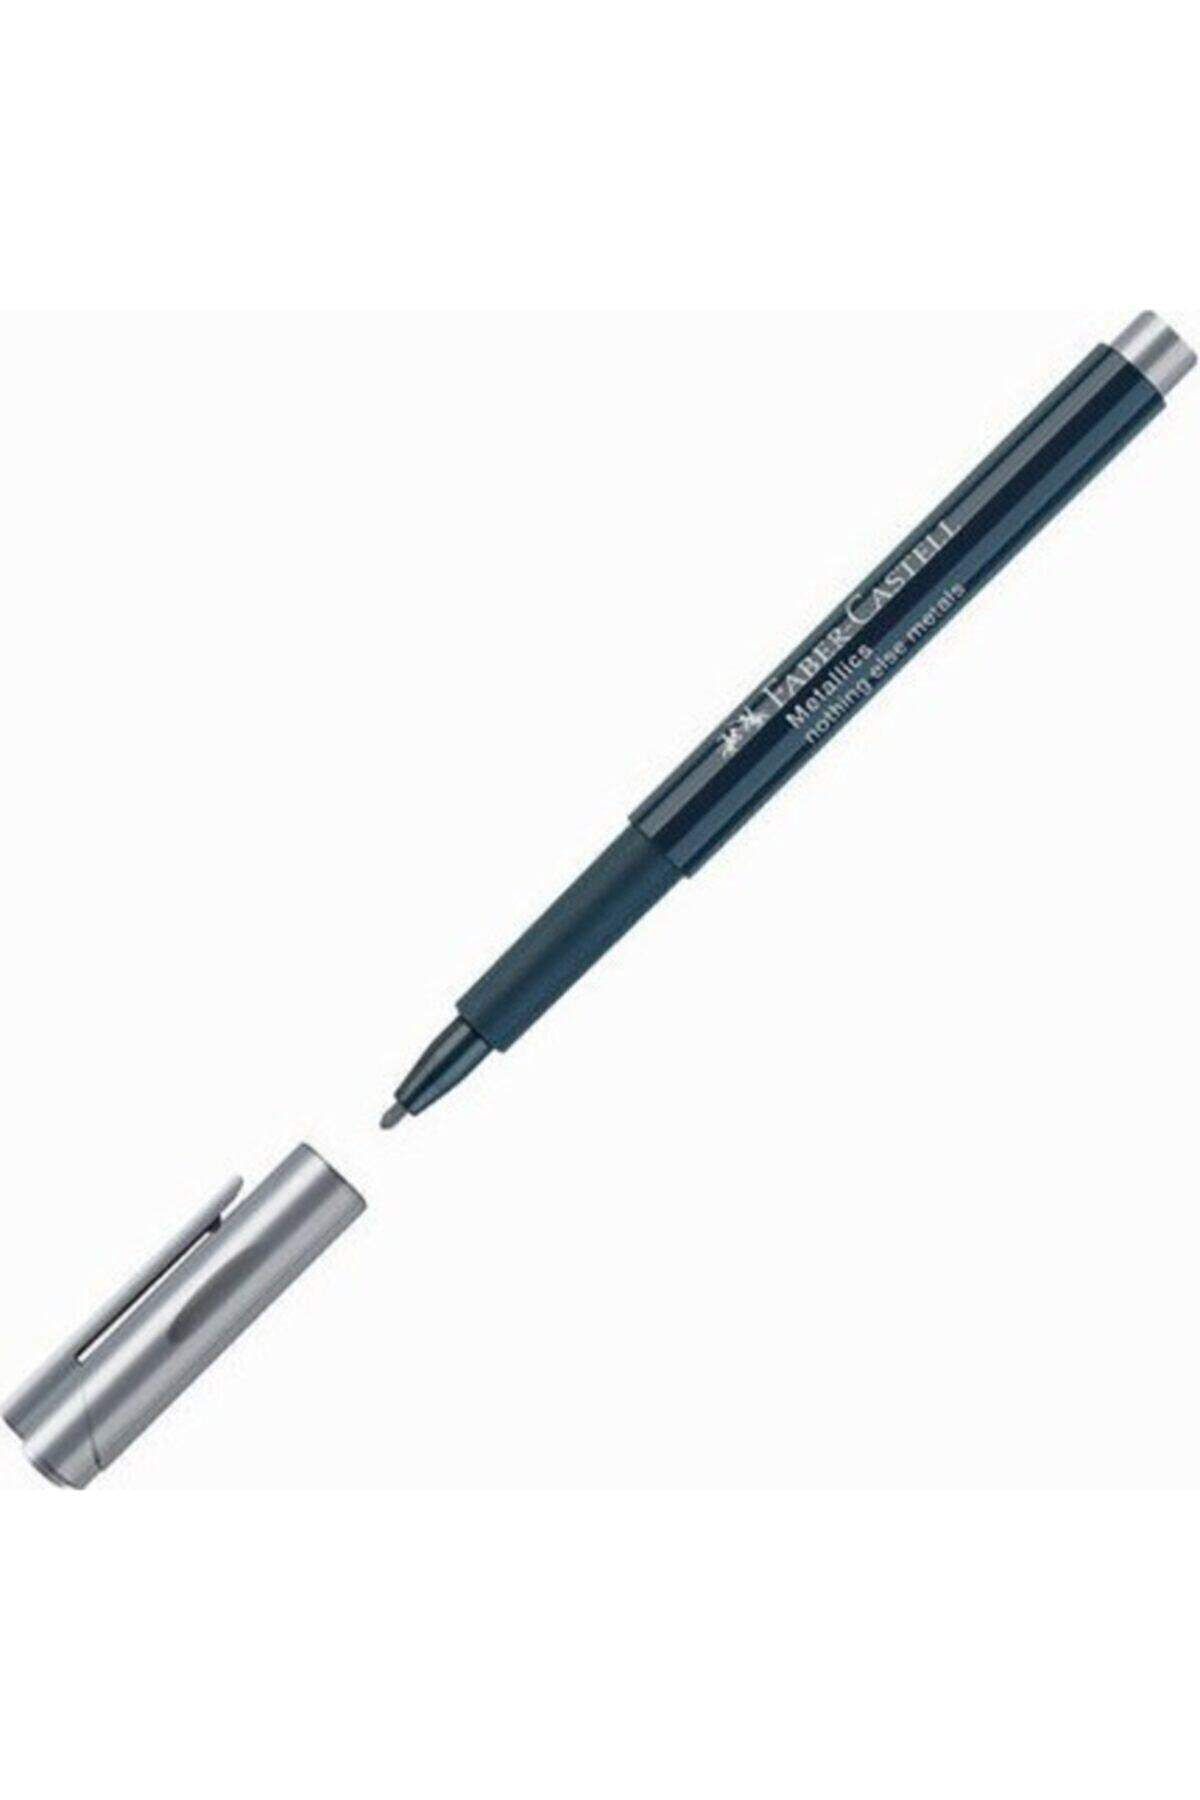 Faber Castell Metallics Gümüş (SİLVER) Pen 1.5mm